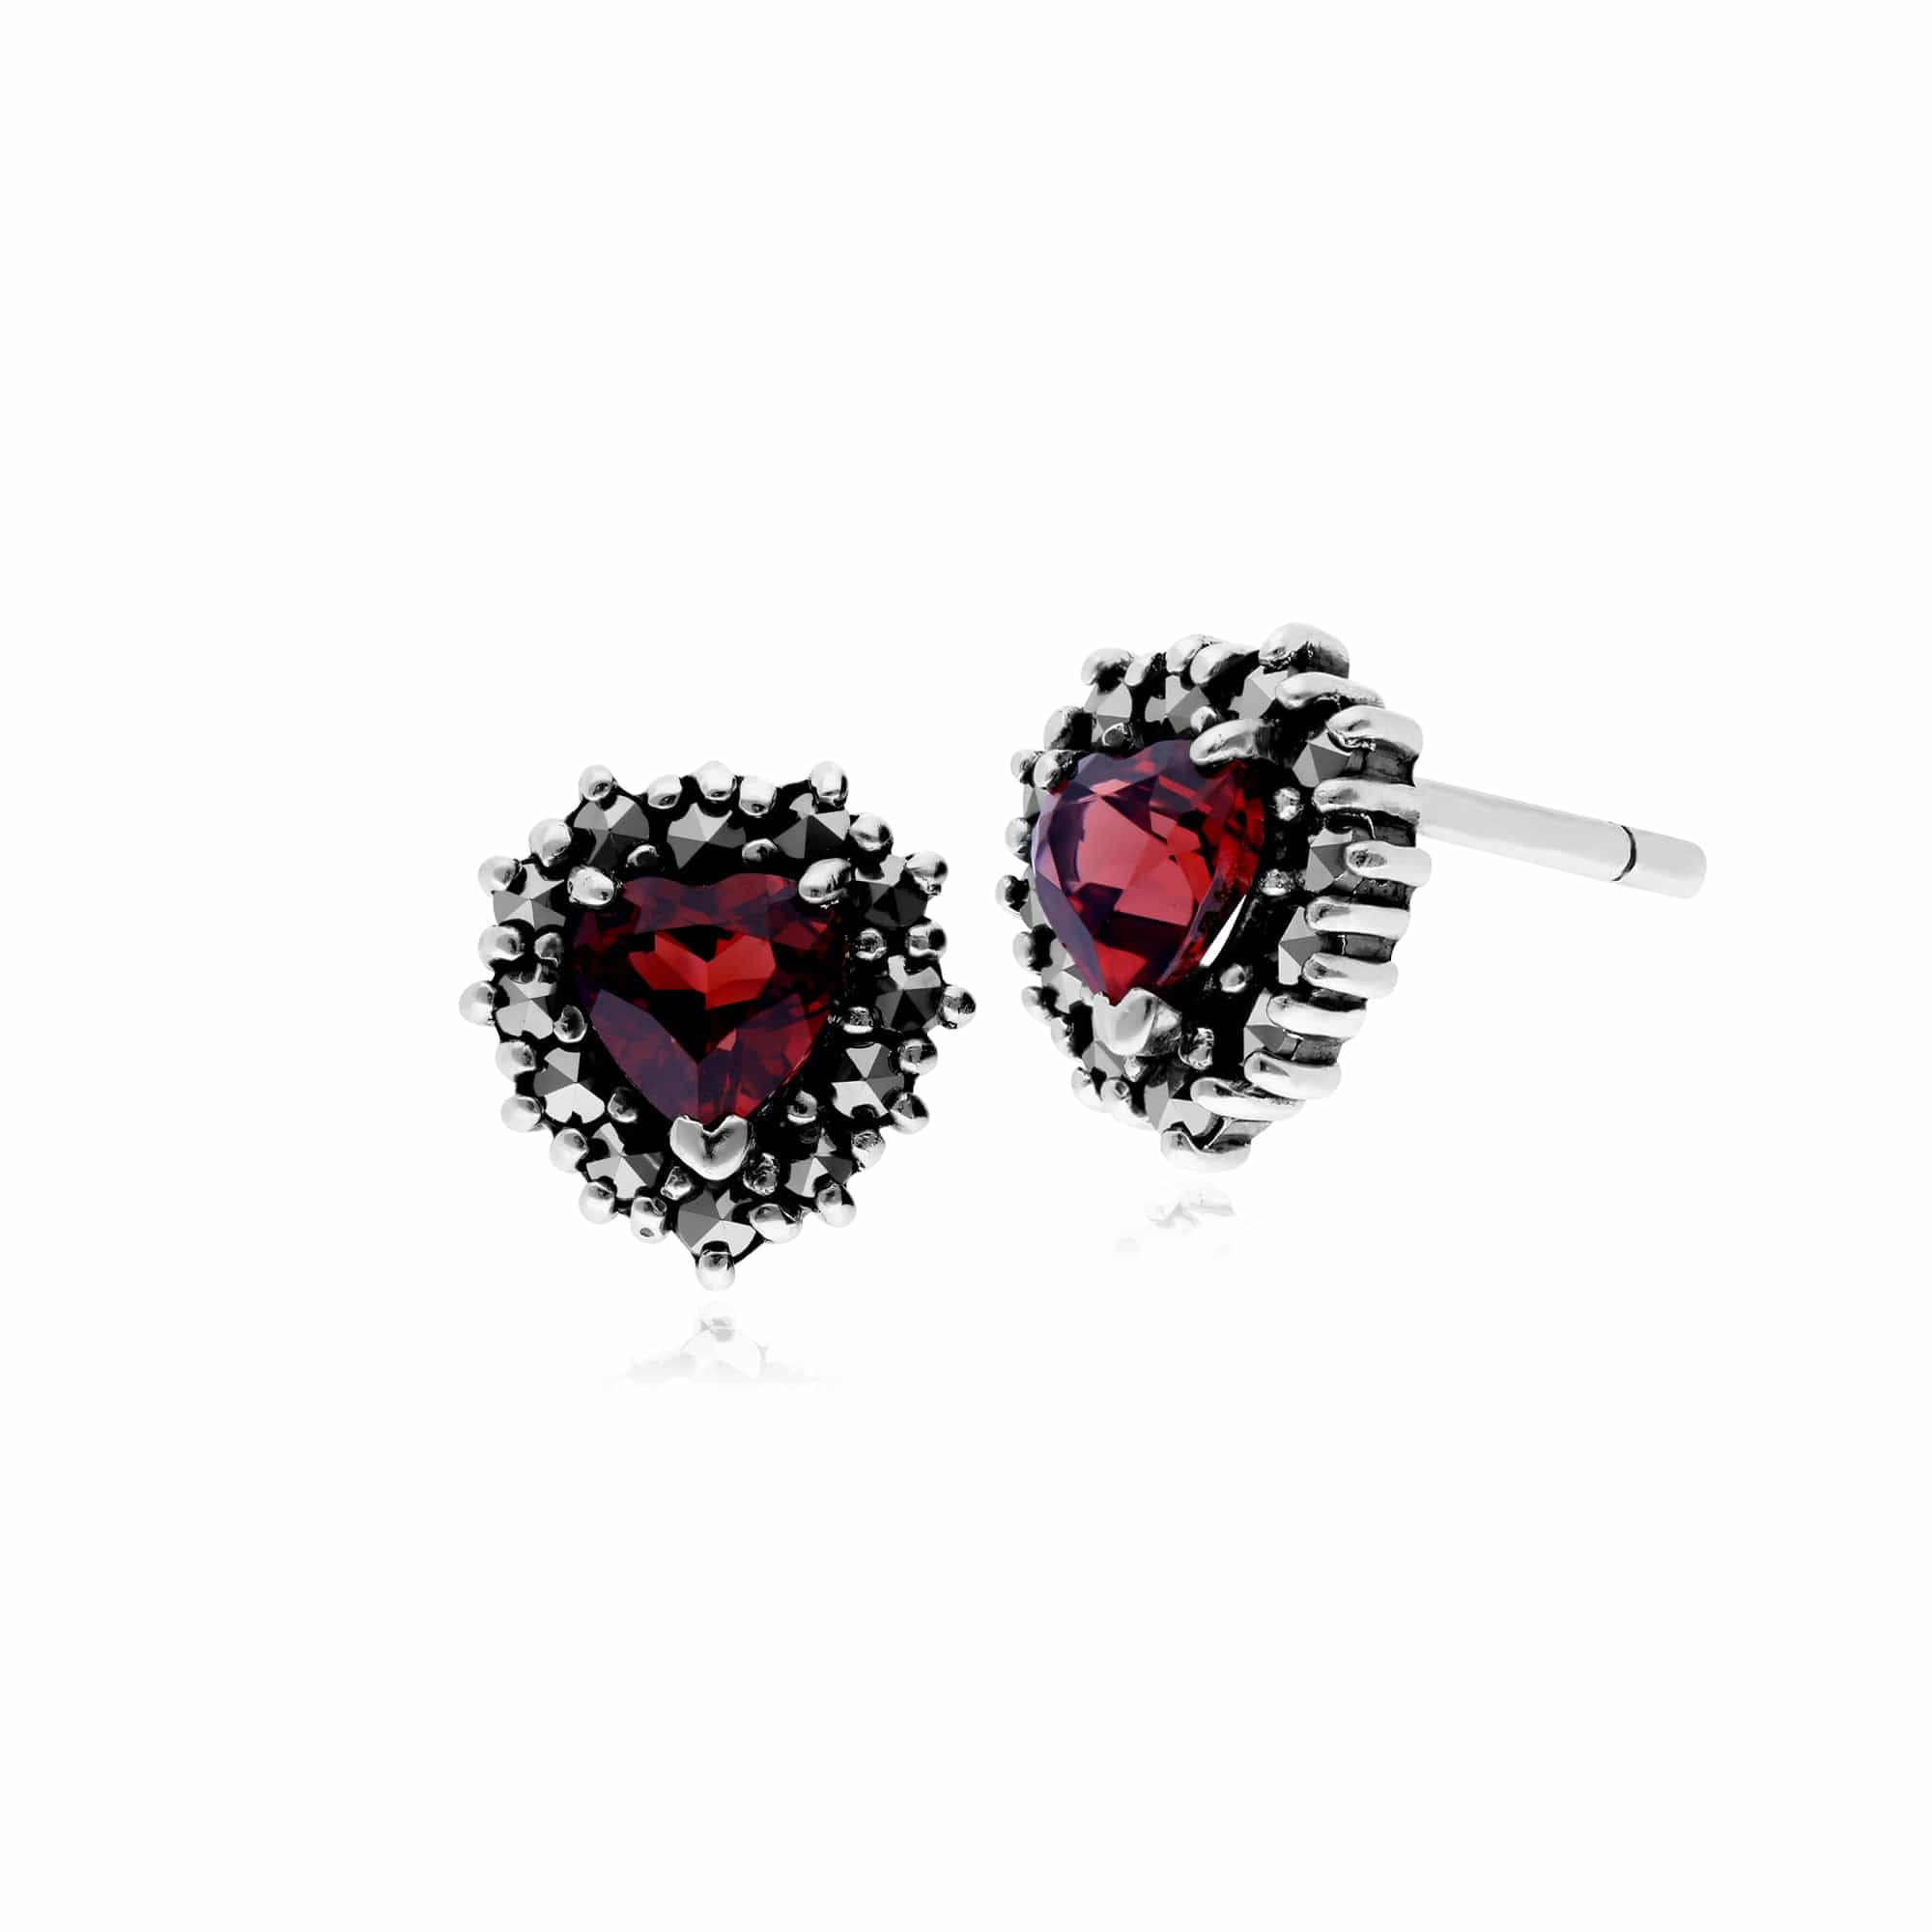 214E725705925 Classic Heart Garnet & Marcasite Halo Heart Stud Earrings in 925 Sterling Silver 1